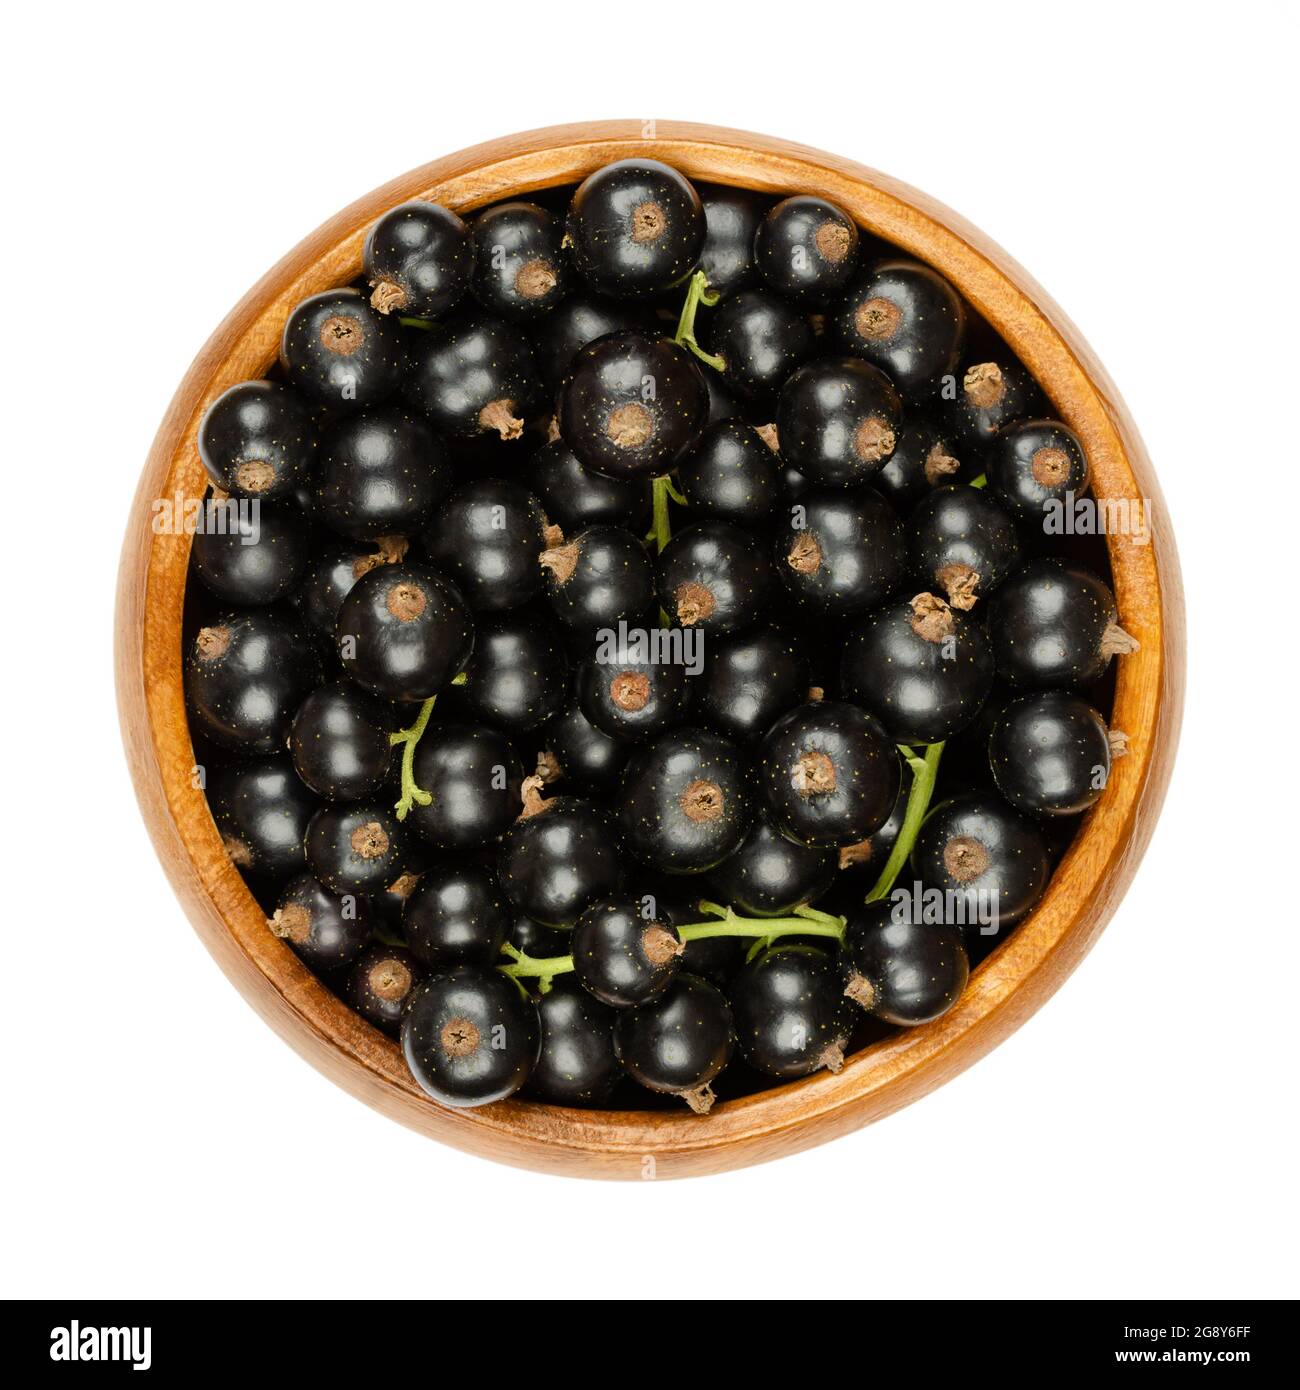 Schwarze Johannisbeeren, in einer Holzschale. Frische, reife schwarze Johannisbeerbeeren, auch bekannt als Cassis, kugelförmige essbare Früchte von Ribes nigrum. Stockfoto